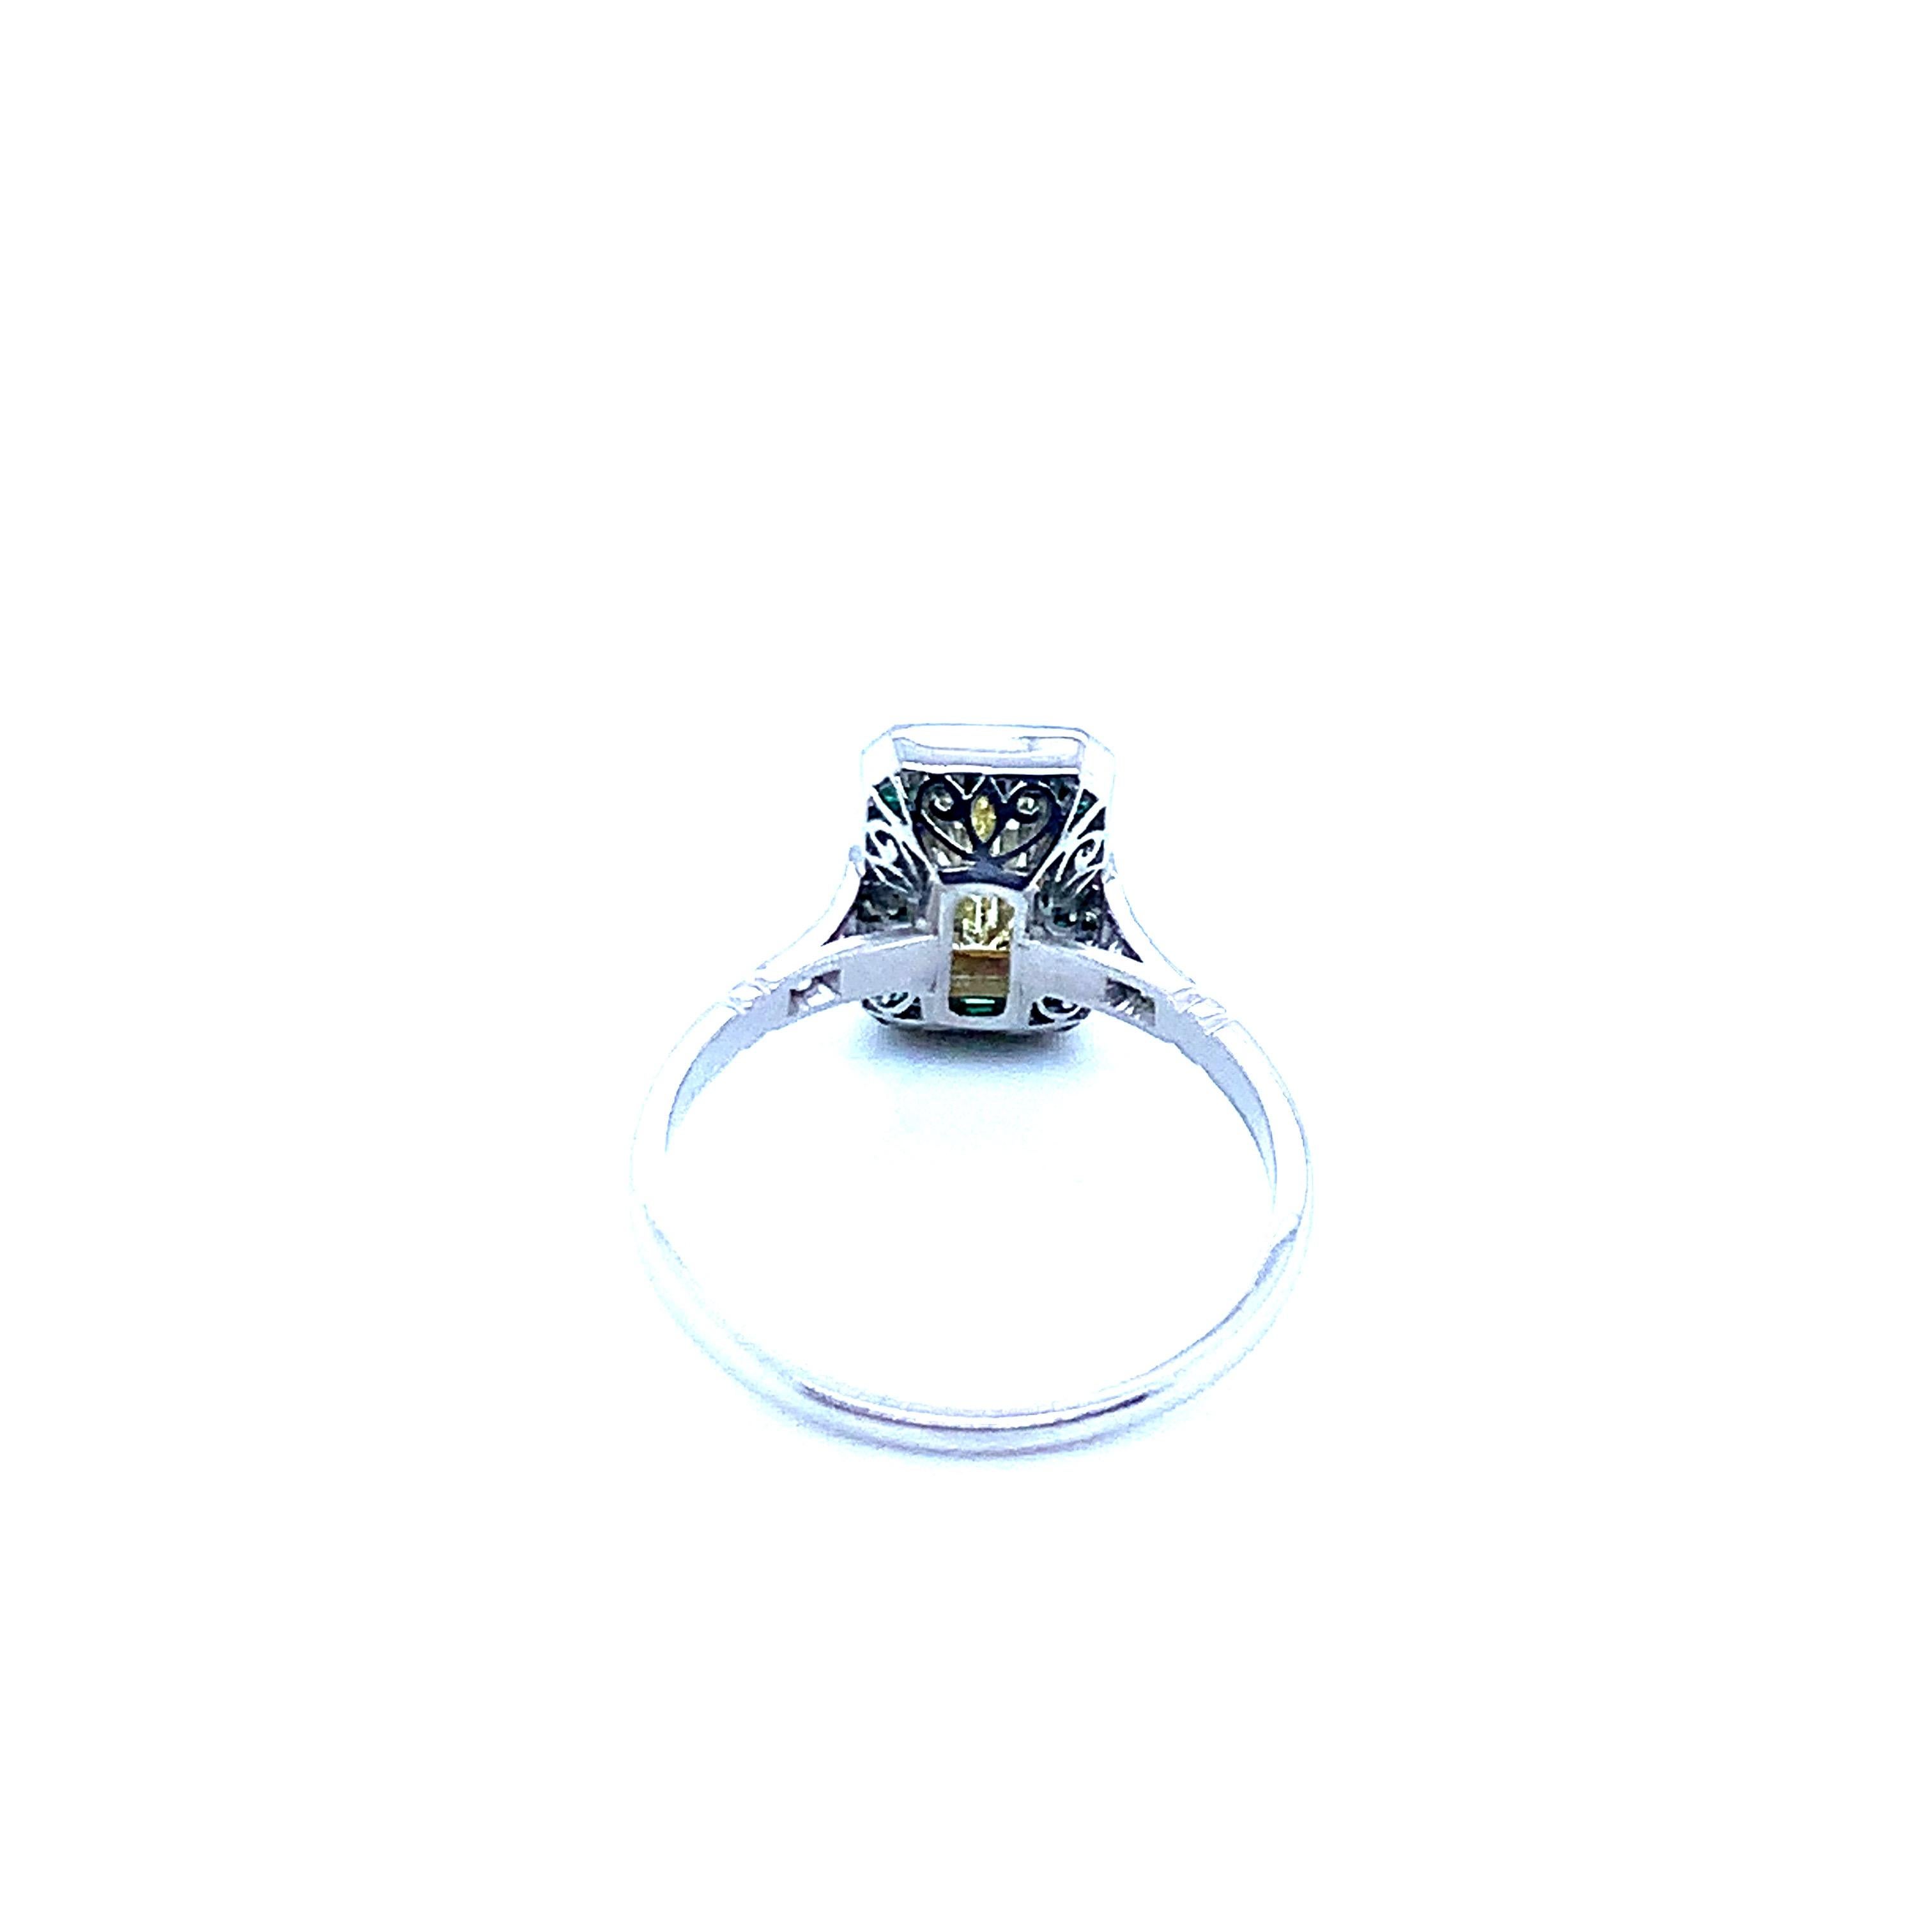 Platinring mit einem Diamanten im Baguetteschliff mit einem Gewicht von 0,71 Karat, 6 Diamanten im Altminenschliff mit einem Gewicht von 0,09 Karat und 22 Smaragden mit einem Gewicht von 0,55 Karat. Dieser Ring ist eine Nachbildung des Art déco und